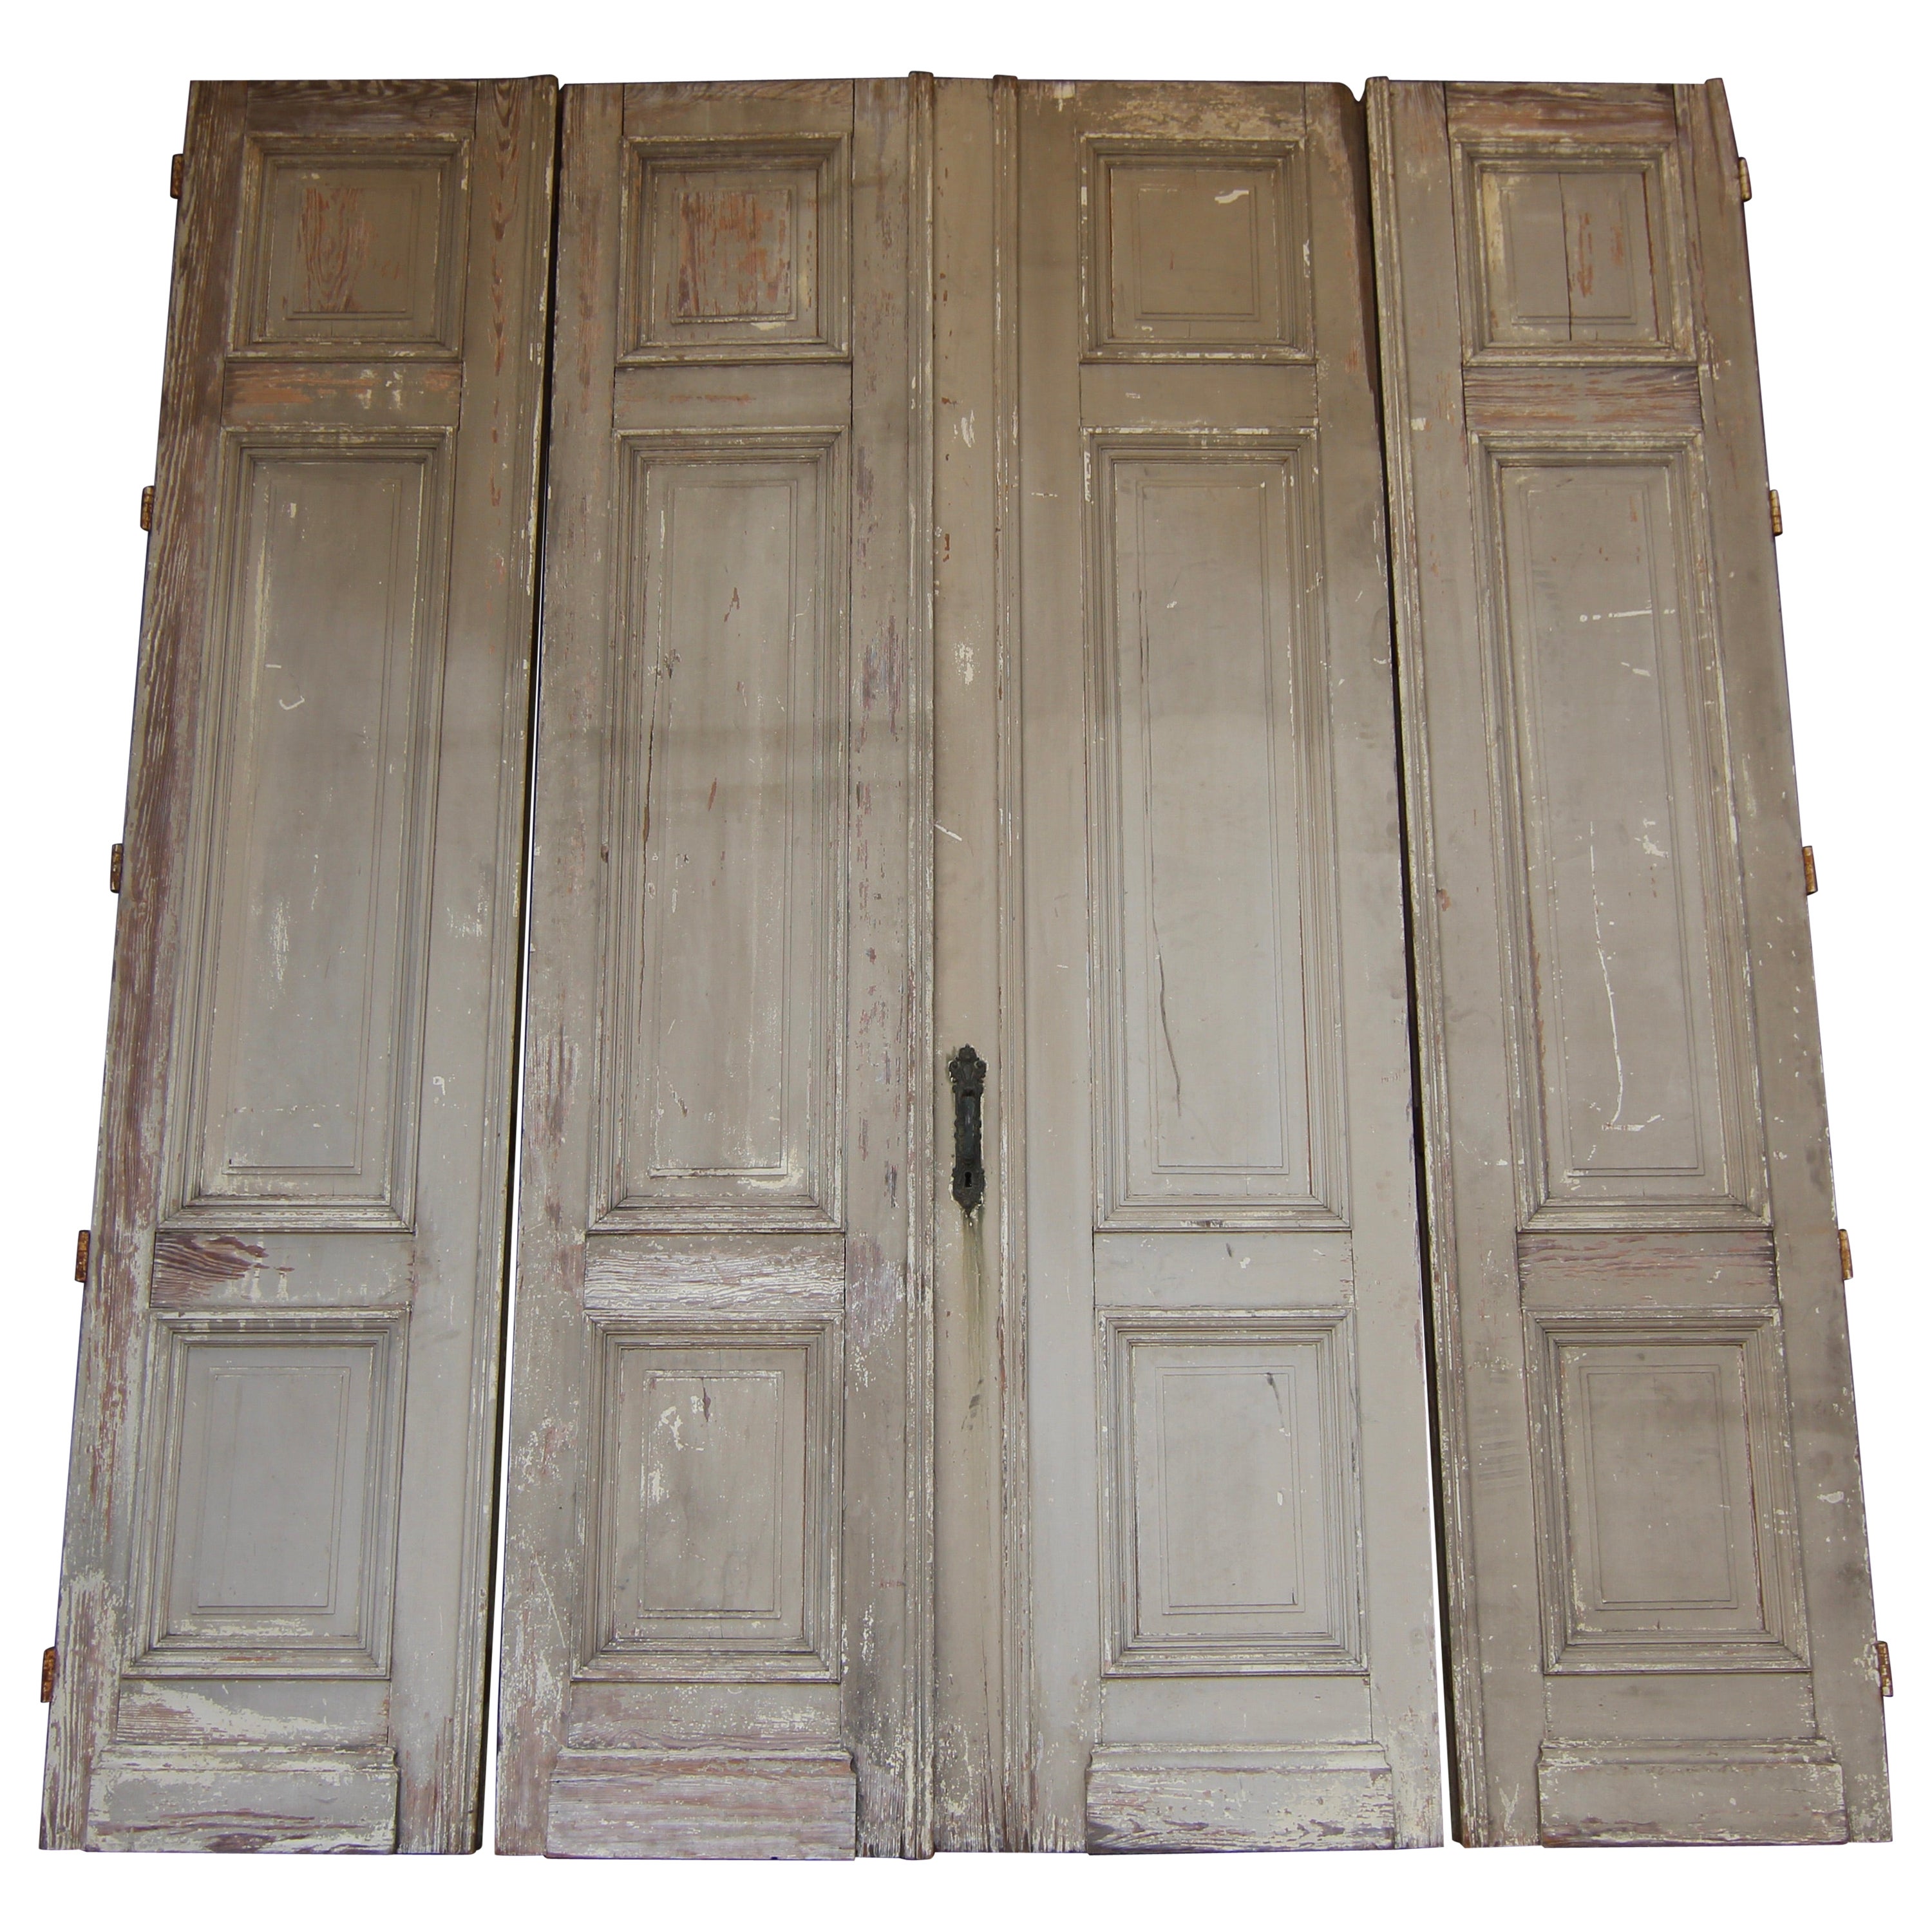 Early 20th Century Double Door consisting of 4 Doors